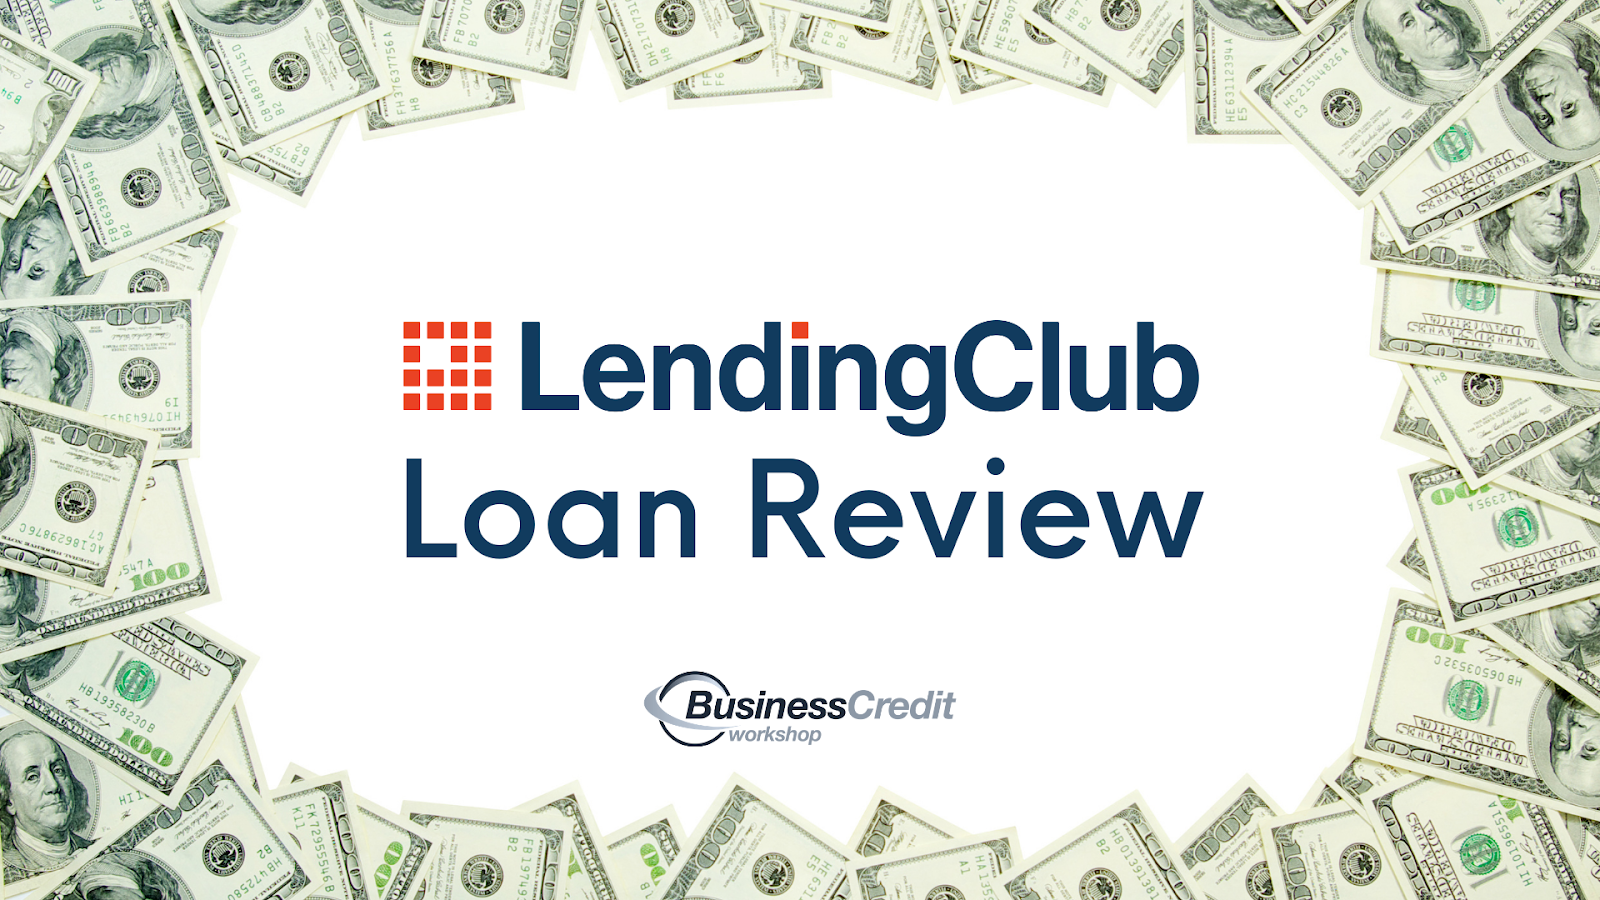 LendingClub Loan Review